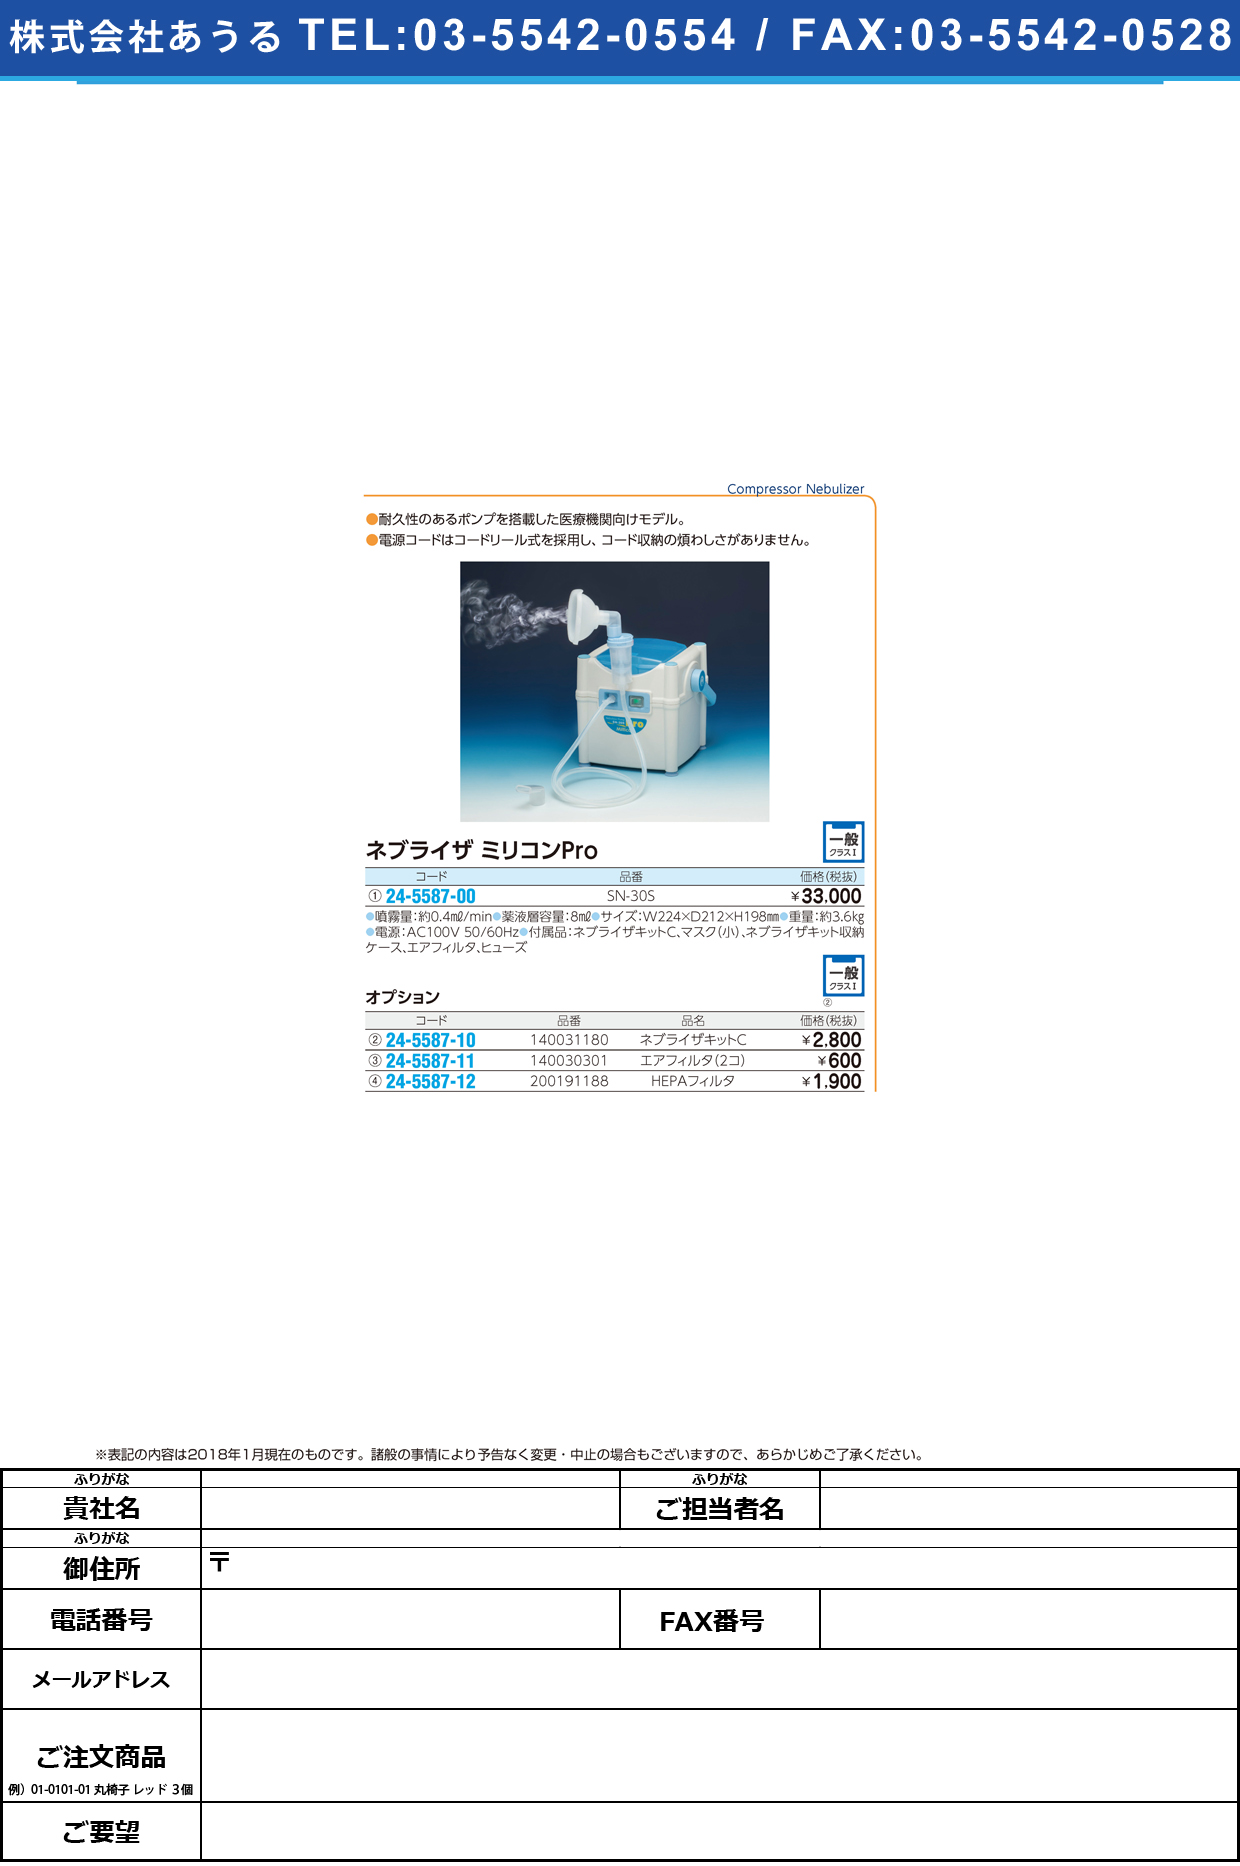 (24-5587-00)ネブライザーミリコンＰｒｏ SN-30S ﾈﾌﾞﾗｲｻﾞｰﾐﾘｺﾝPRO(新鋭工業)【1台単位】【2018年カタログ商品】